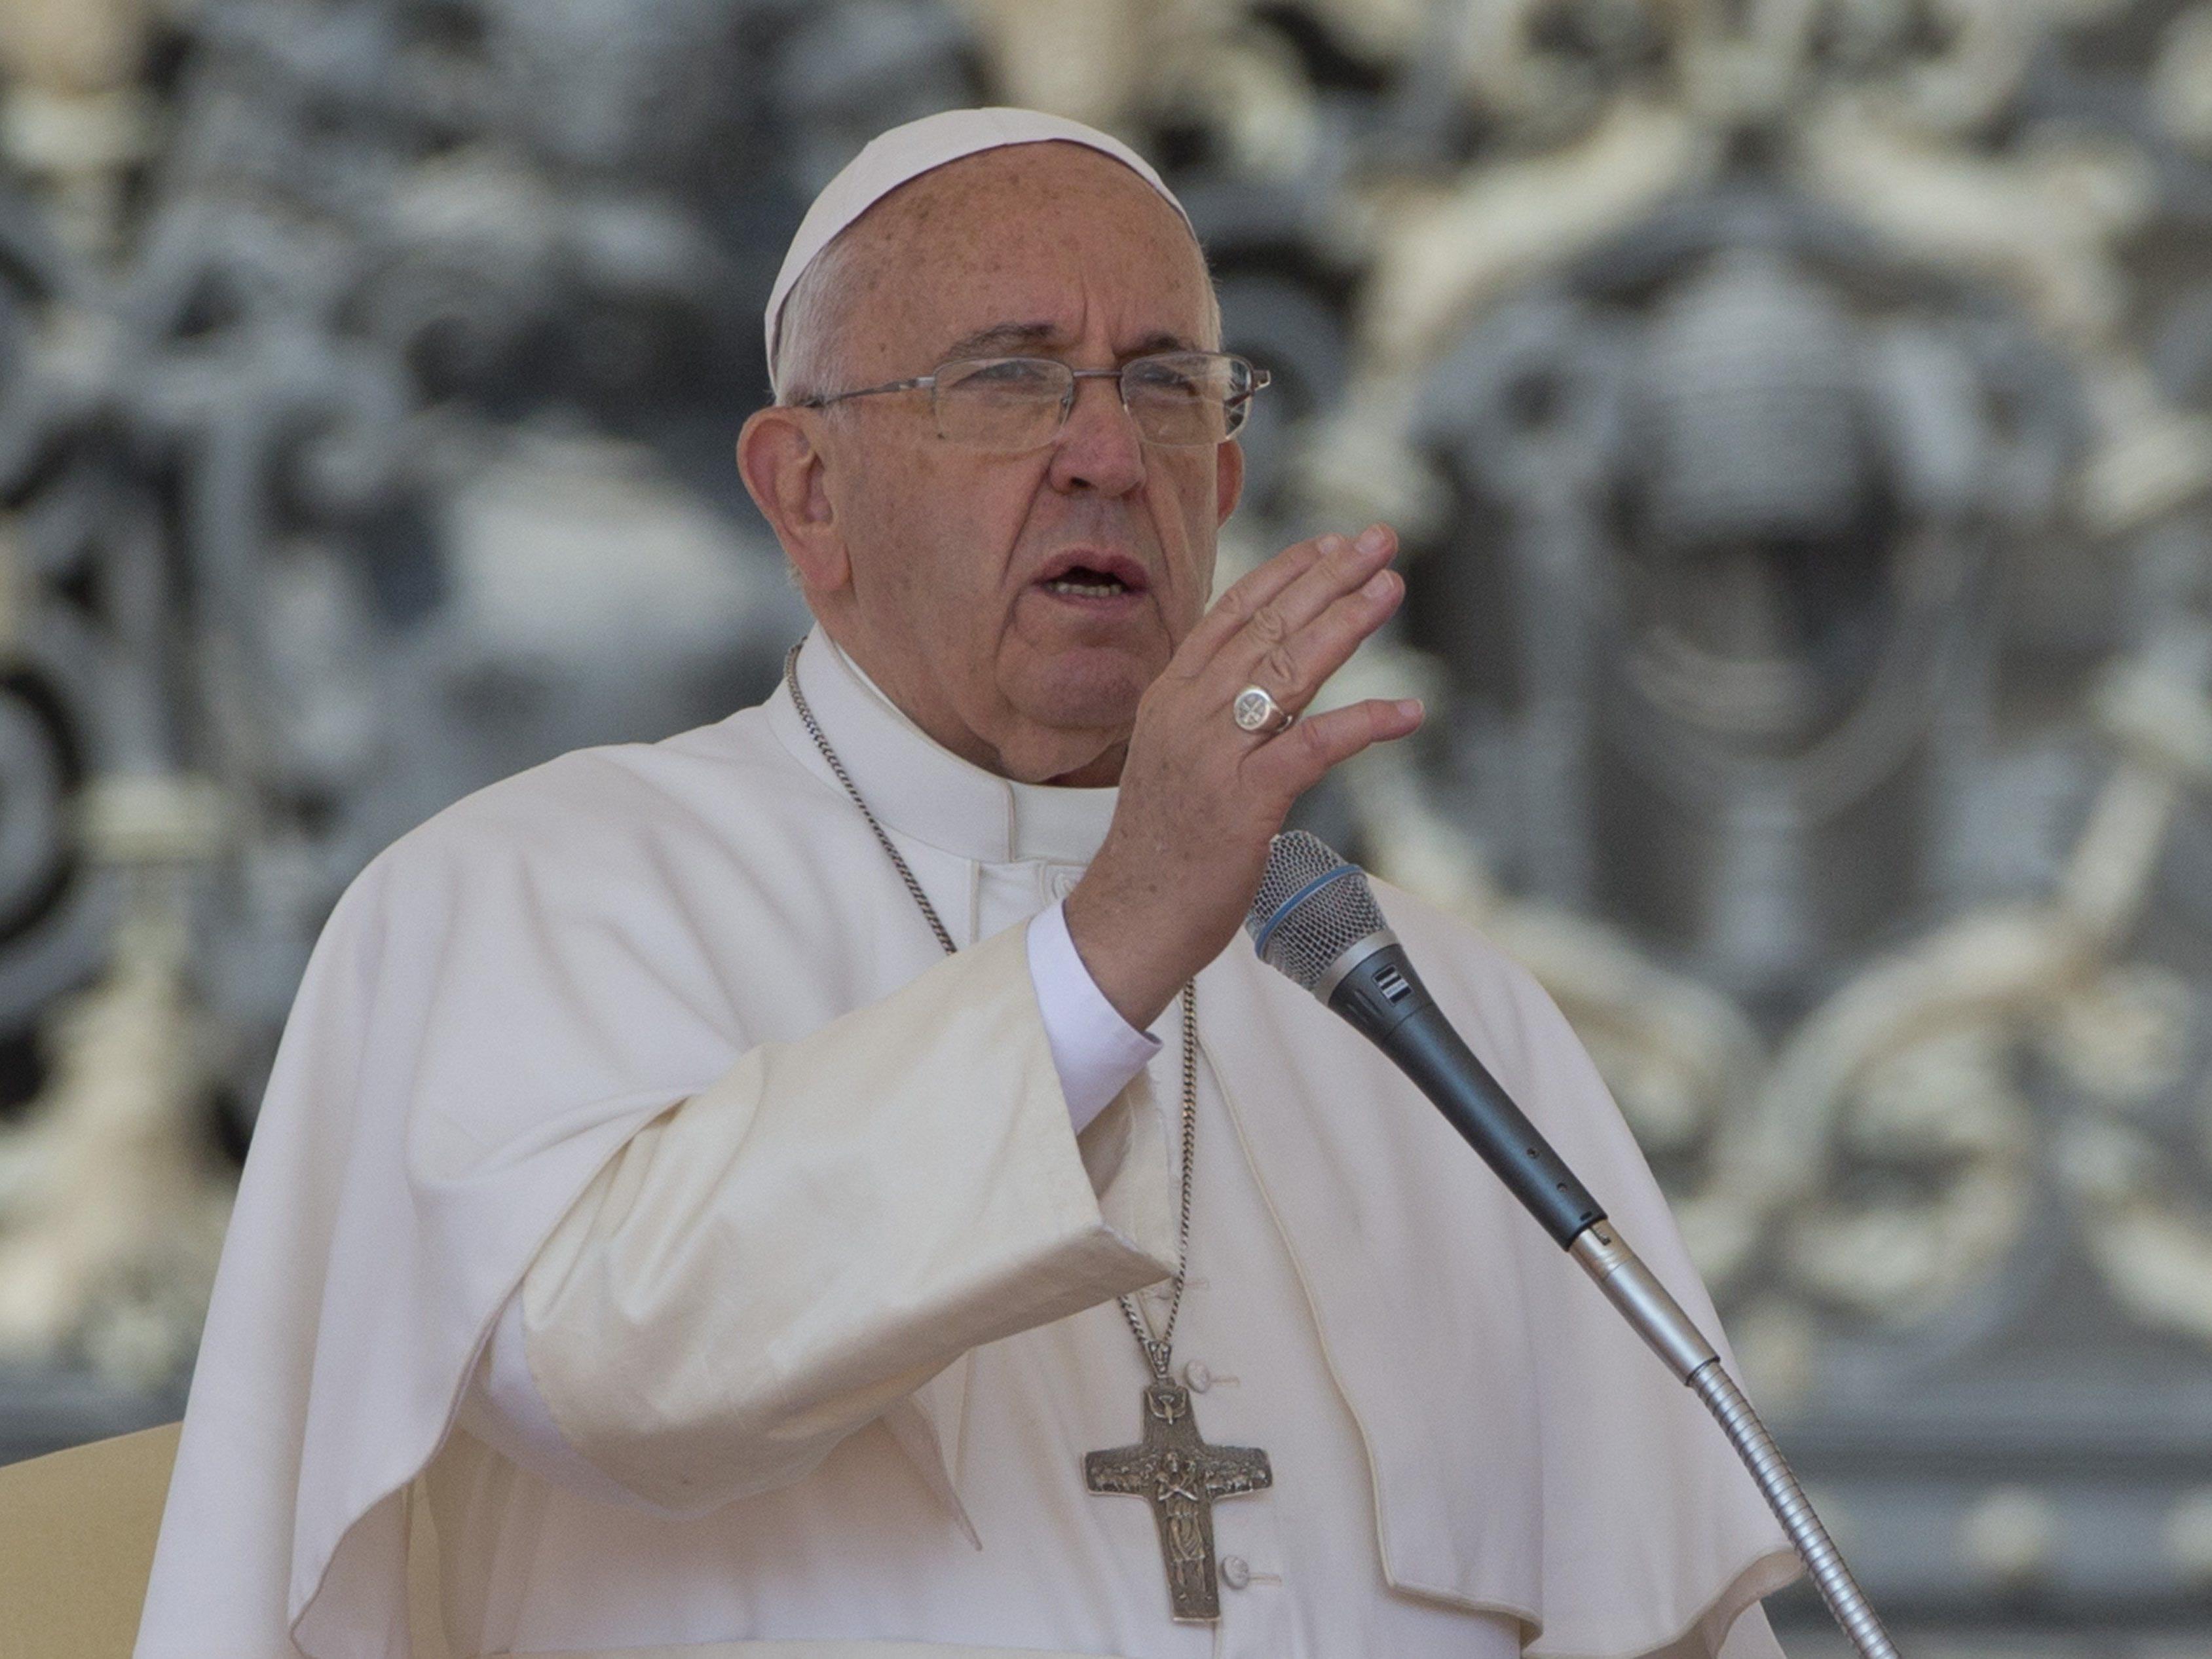 Papst Franziskus sagt die heutige Kultur habe Angst vor Geschlechtsunterschieden.